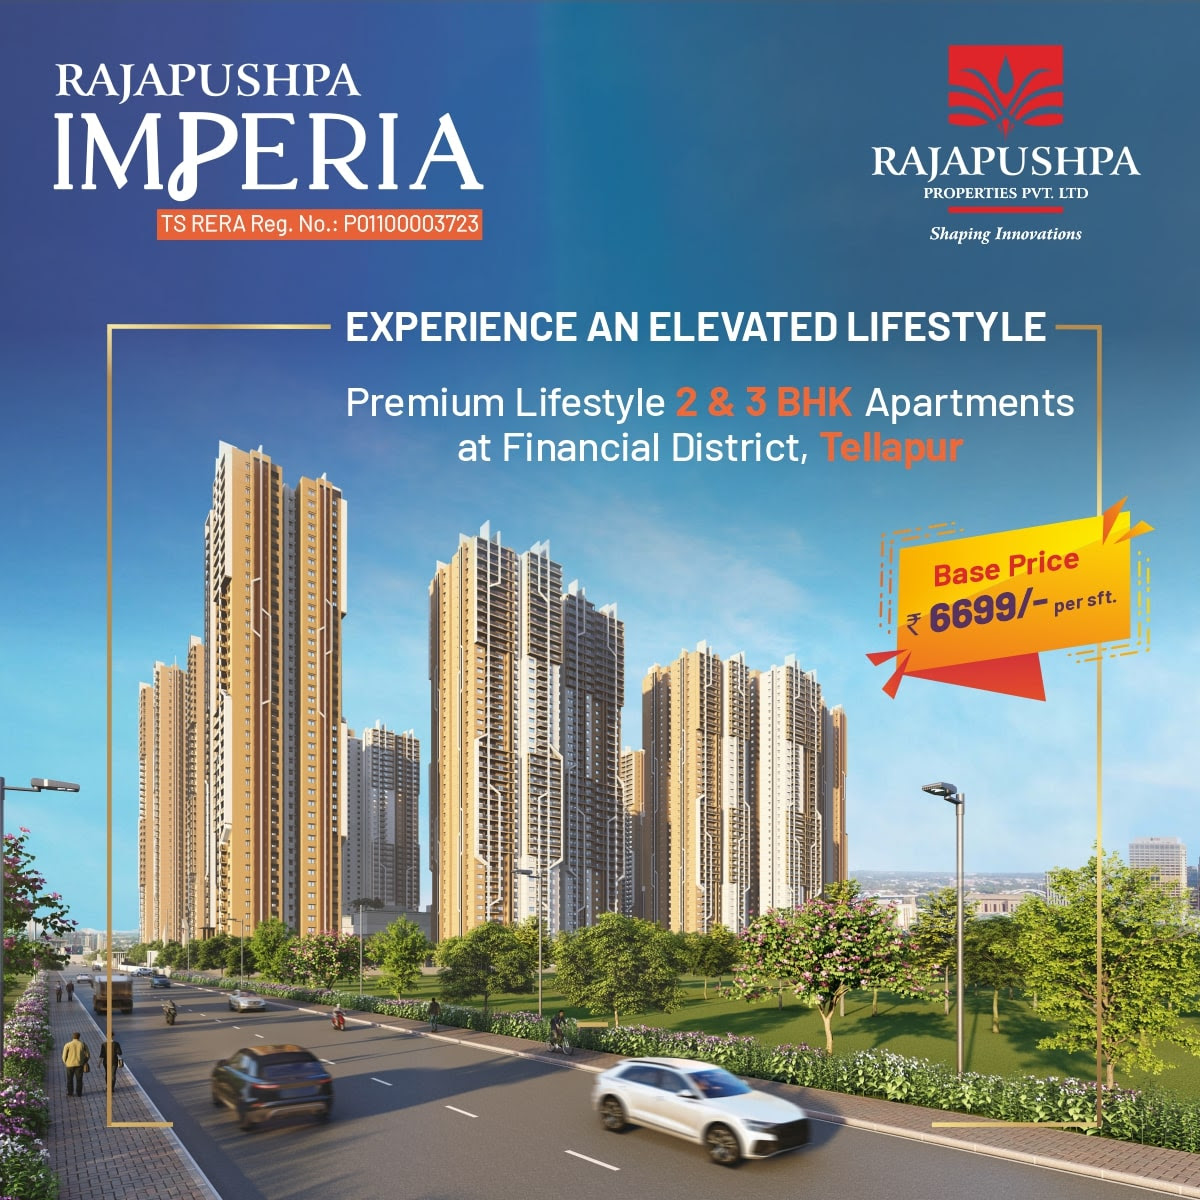 Premium lifestyle 2 & 3 BHK apartments base price Rs 6699 per sqft at Rajapushpa Imperia, Hyderabad